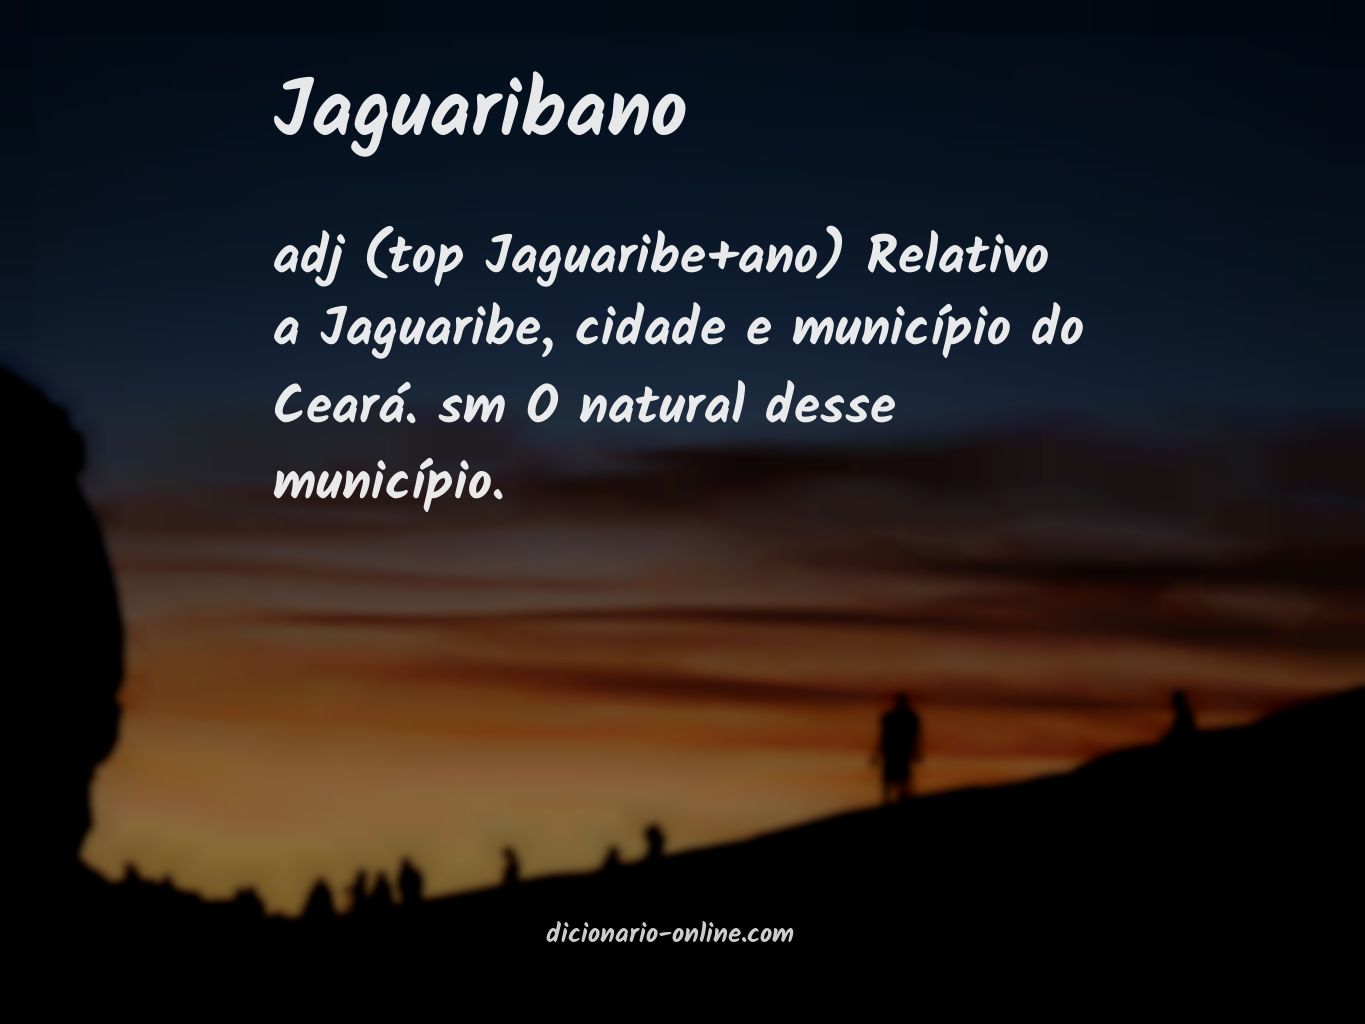 Significado de jaguaribano